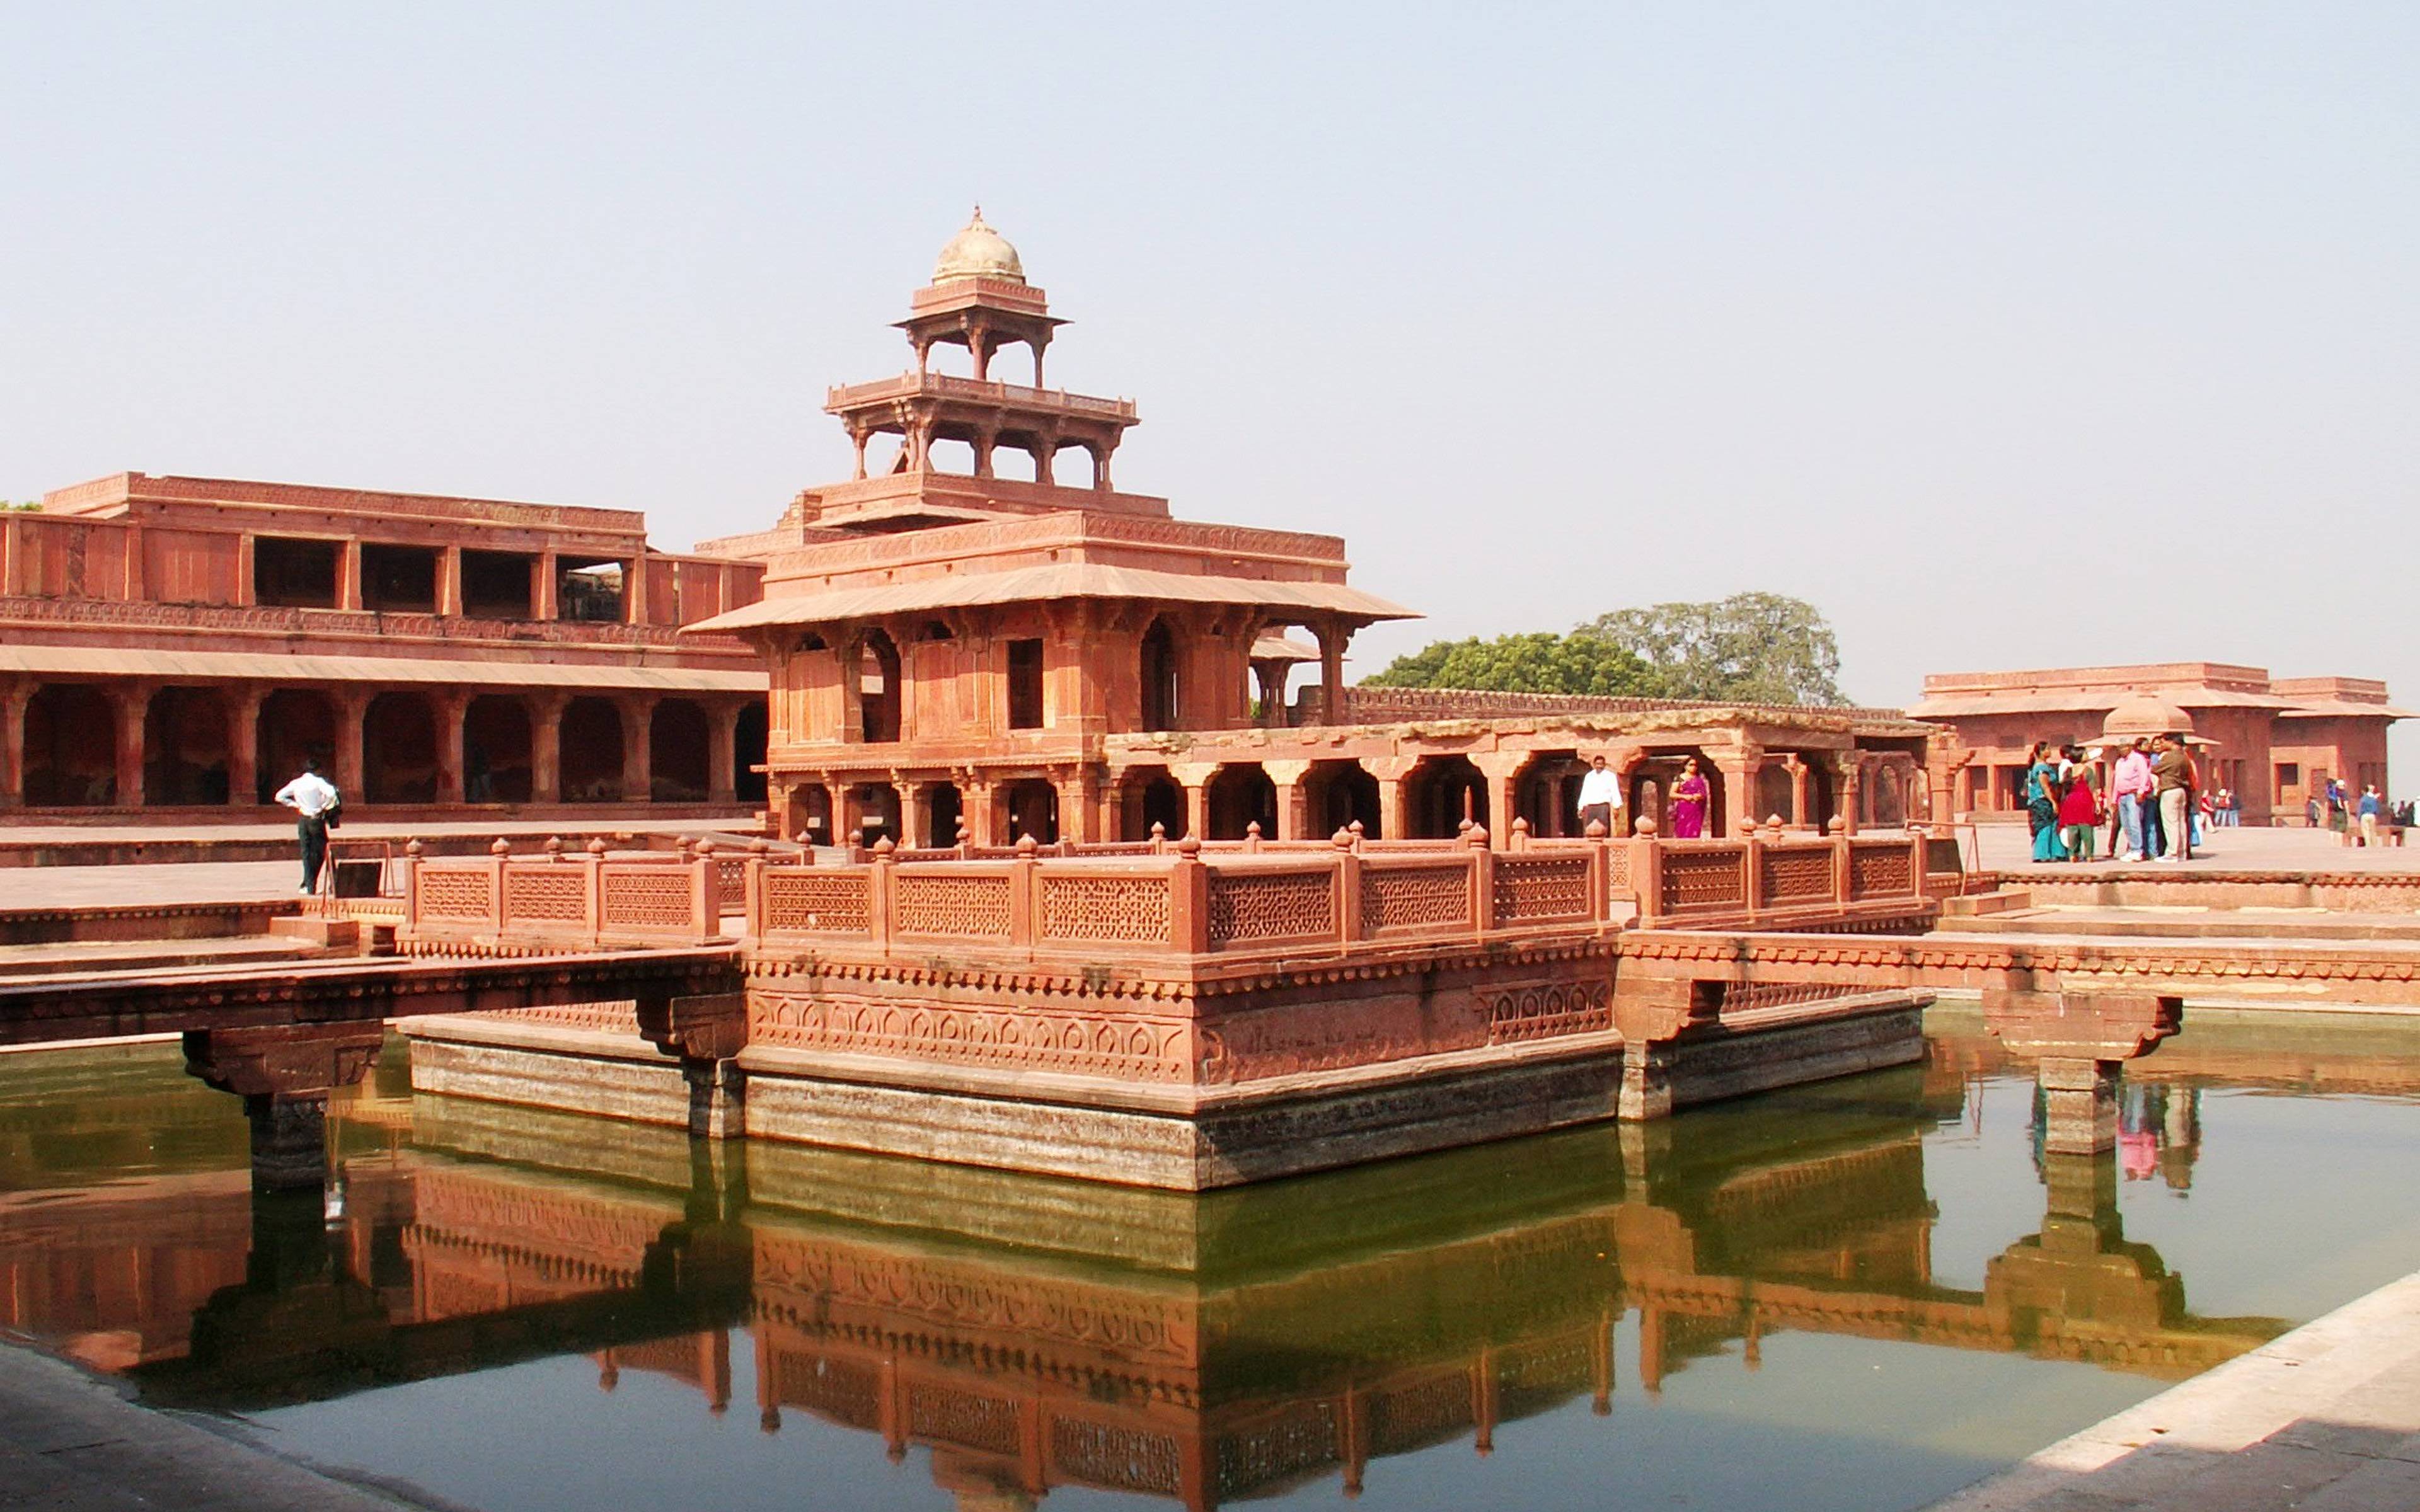 Destino a Agra y visita en camino